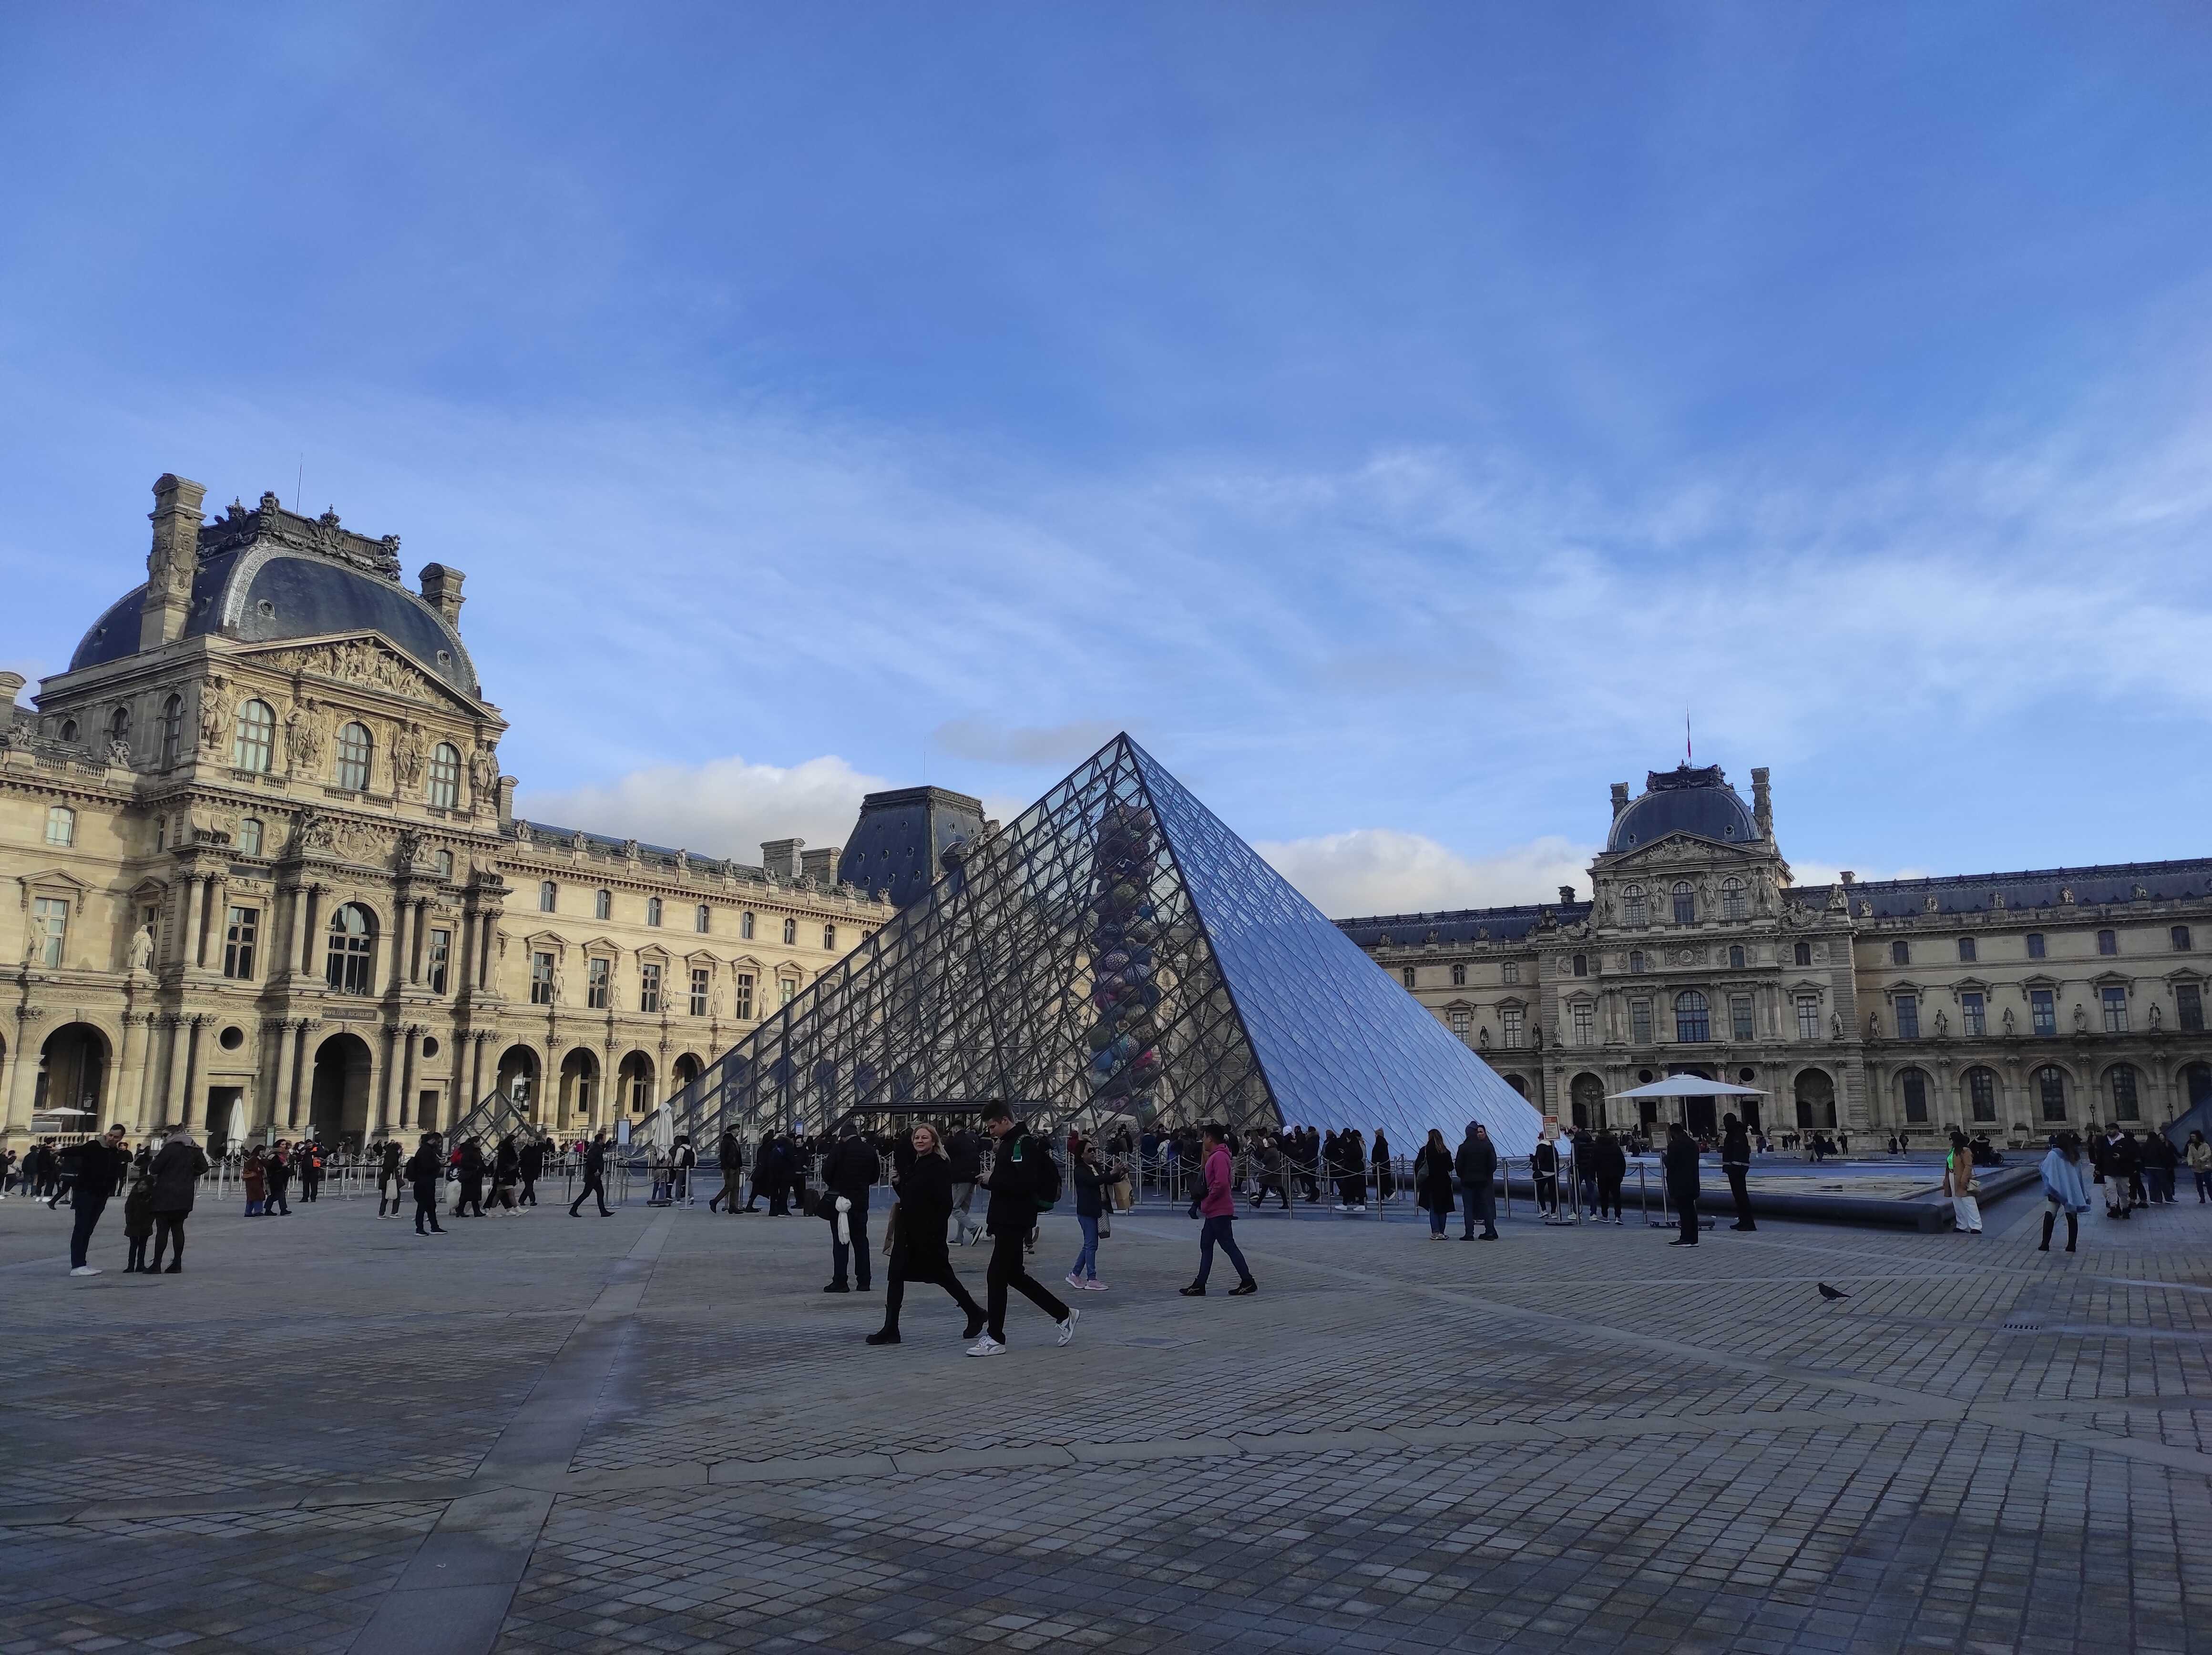 Skleněná pyramida v Louvru. Foto: Olga Holotová